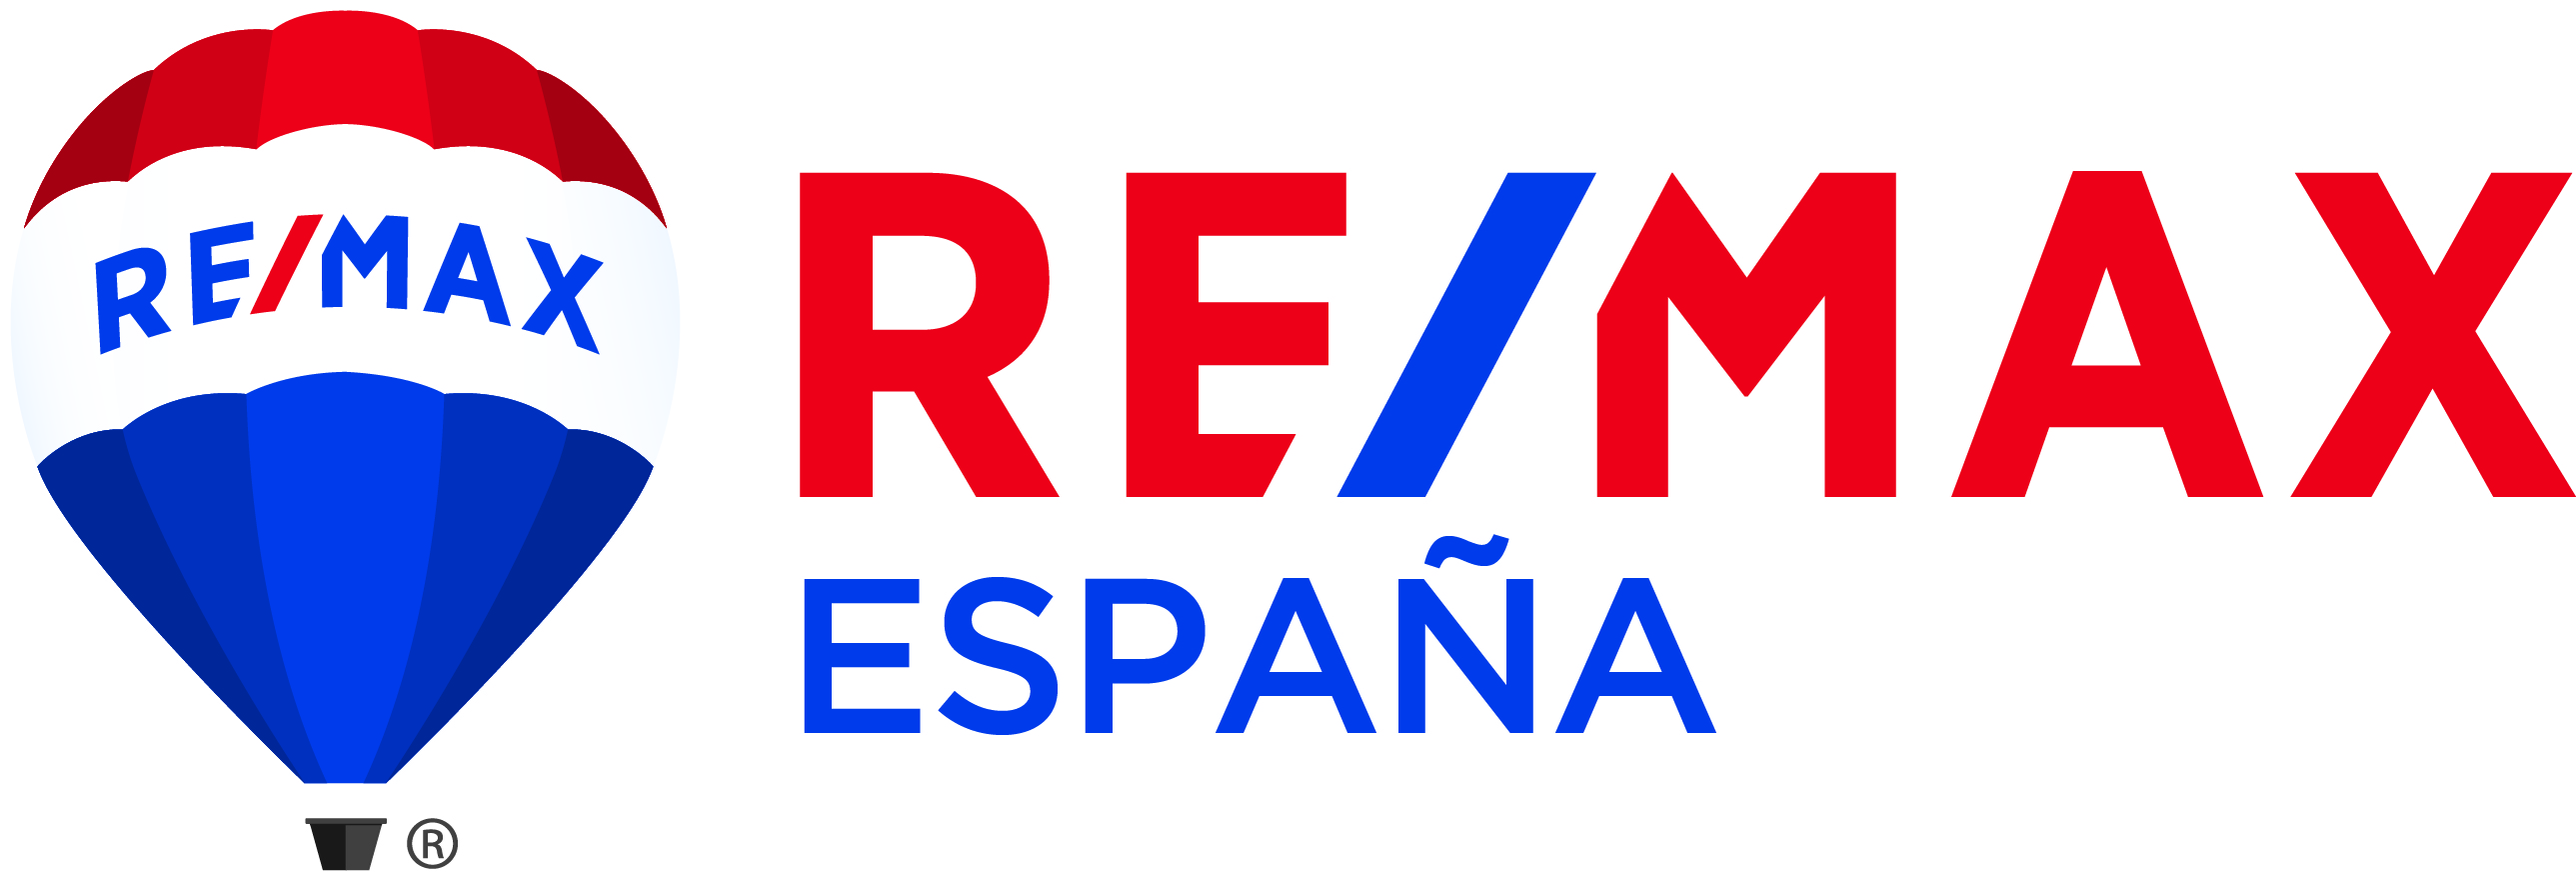 RE/MAX España